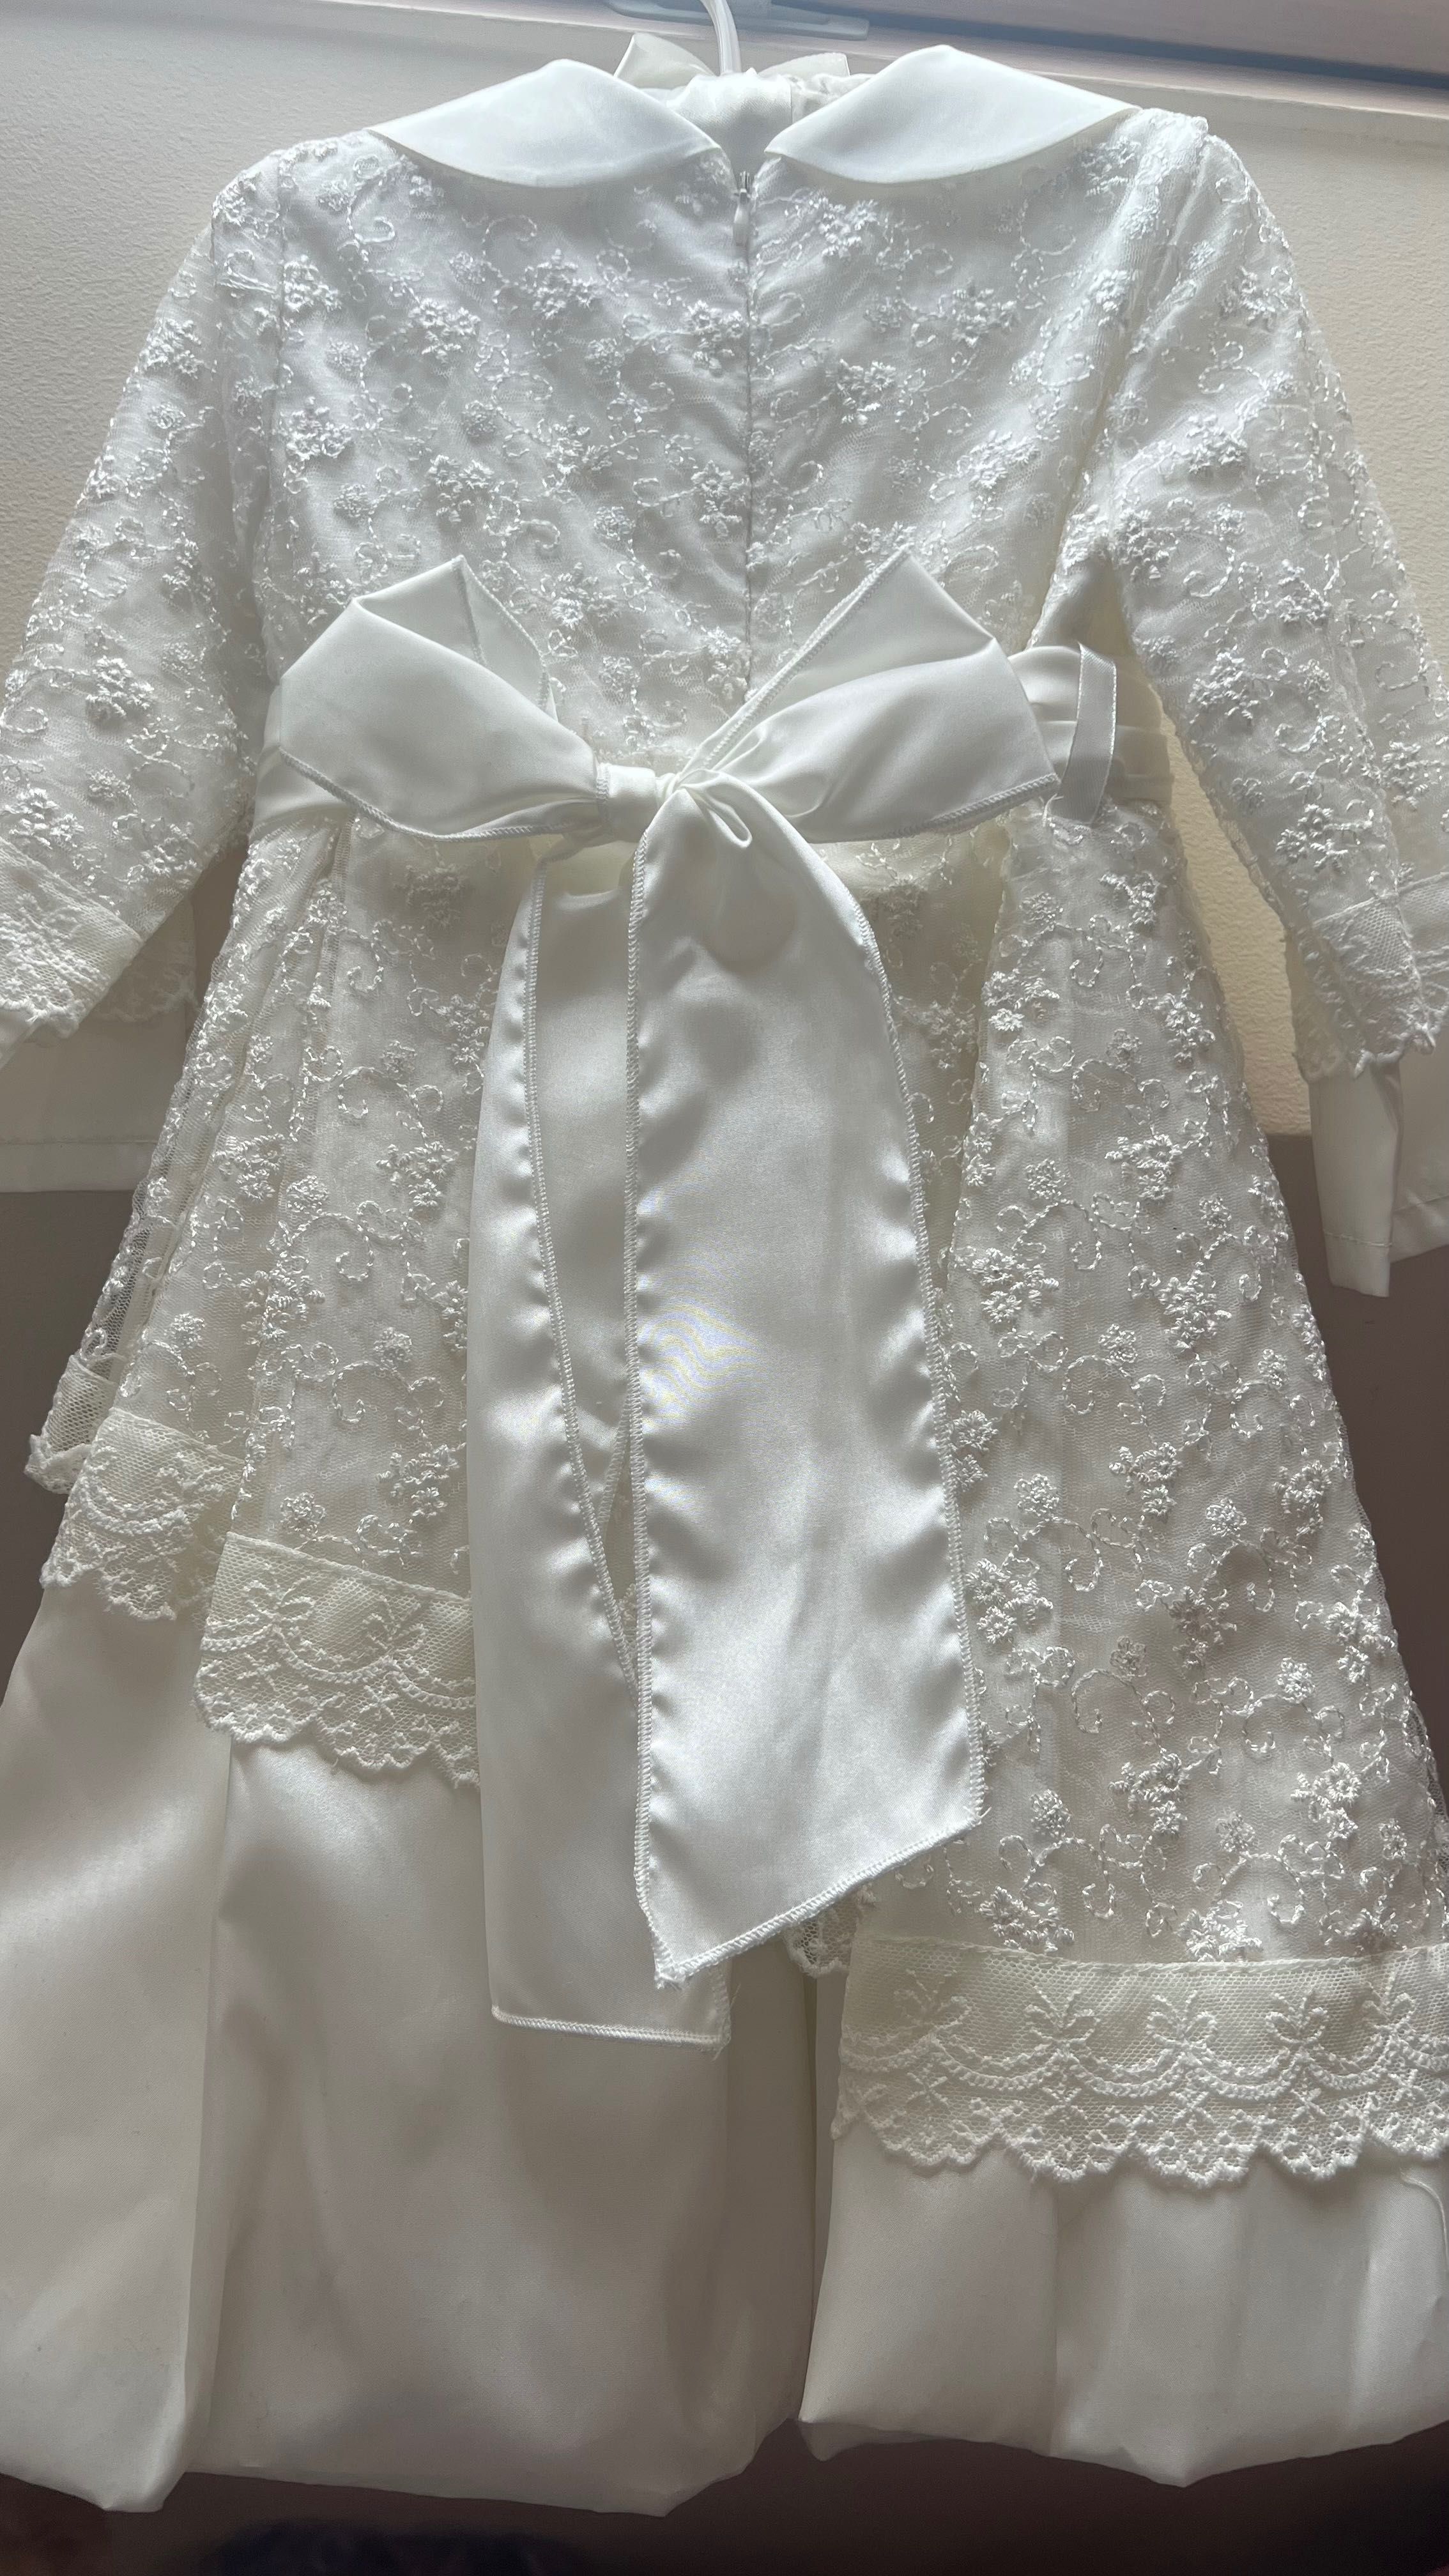 Nowa sukieneczka okazyjna na chrzest/ roczek 86